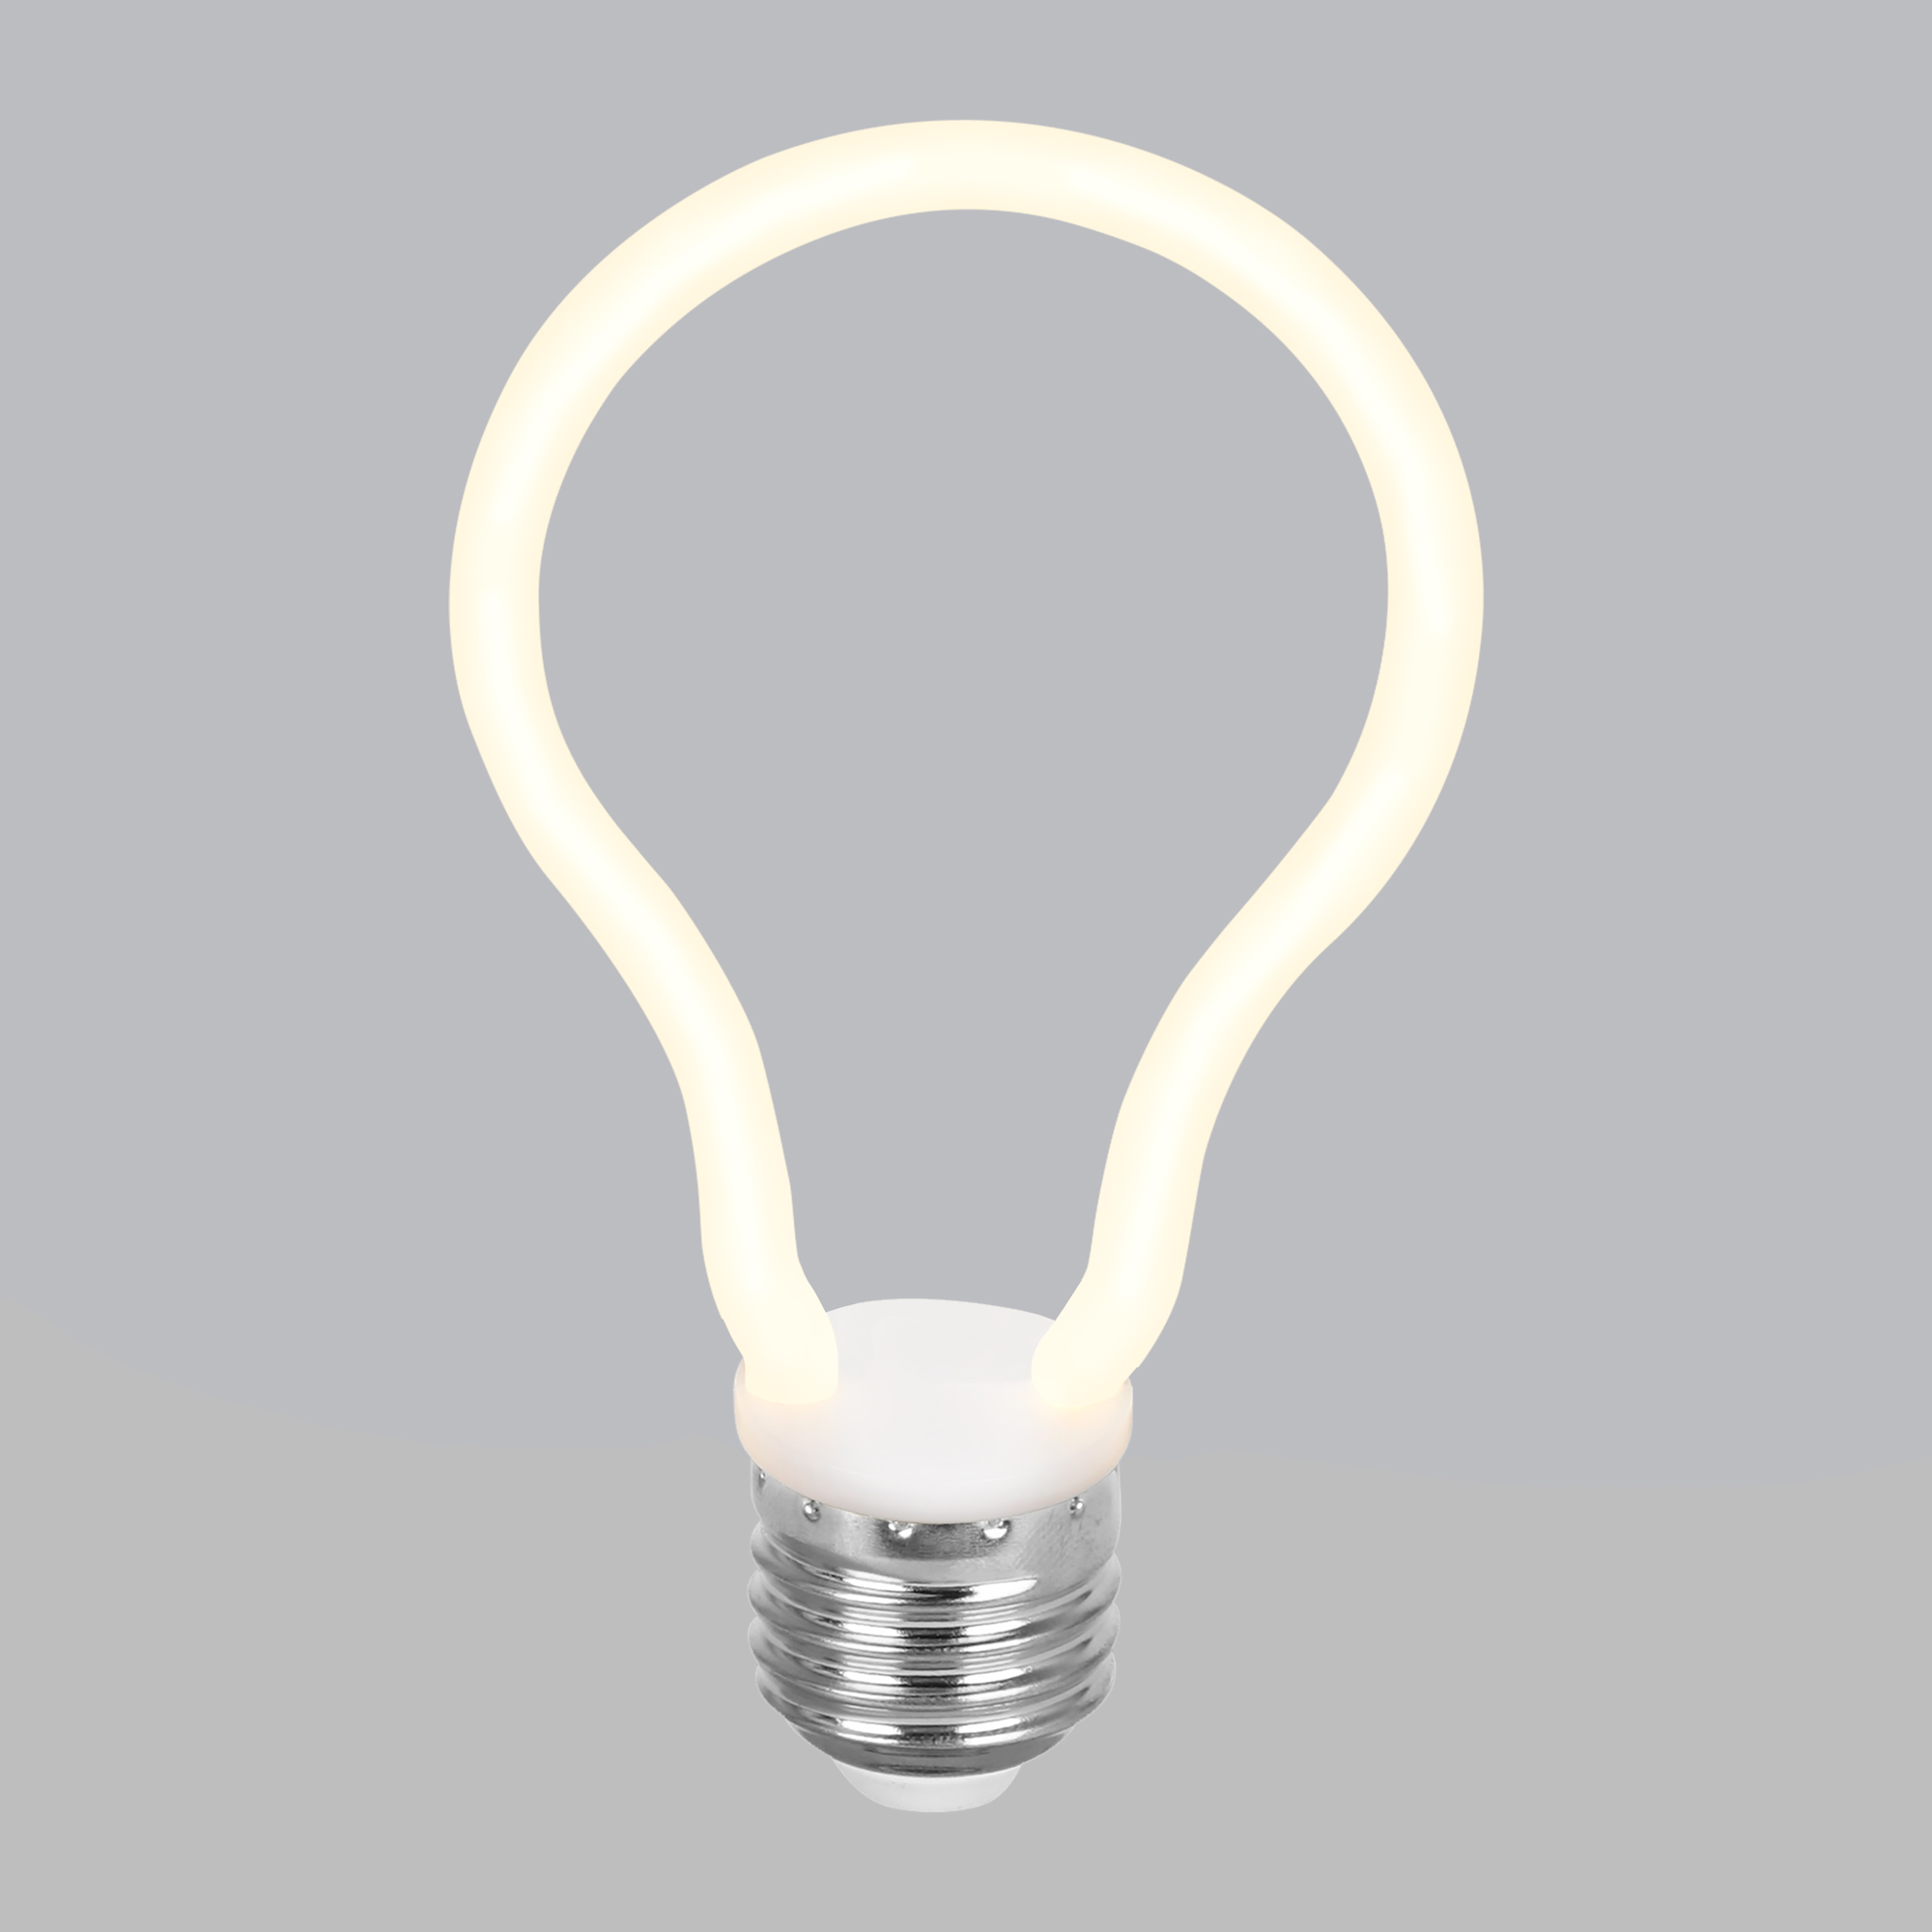 Декоративная контурная грушевидная лампа Decor filament 4W 2700K E27